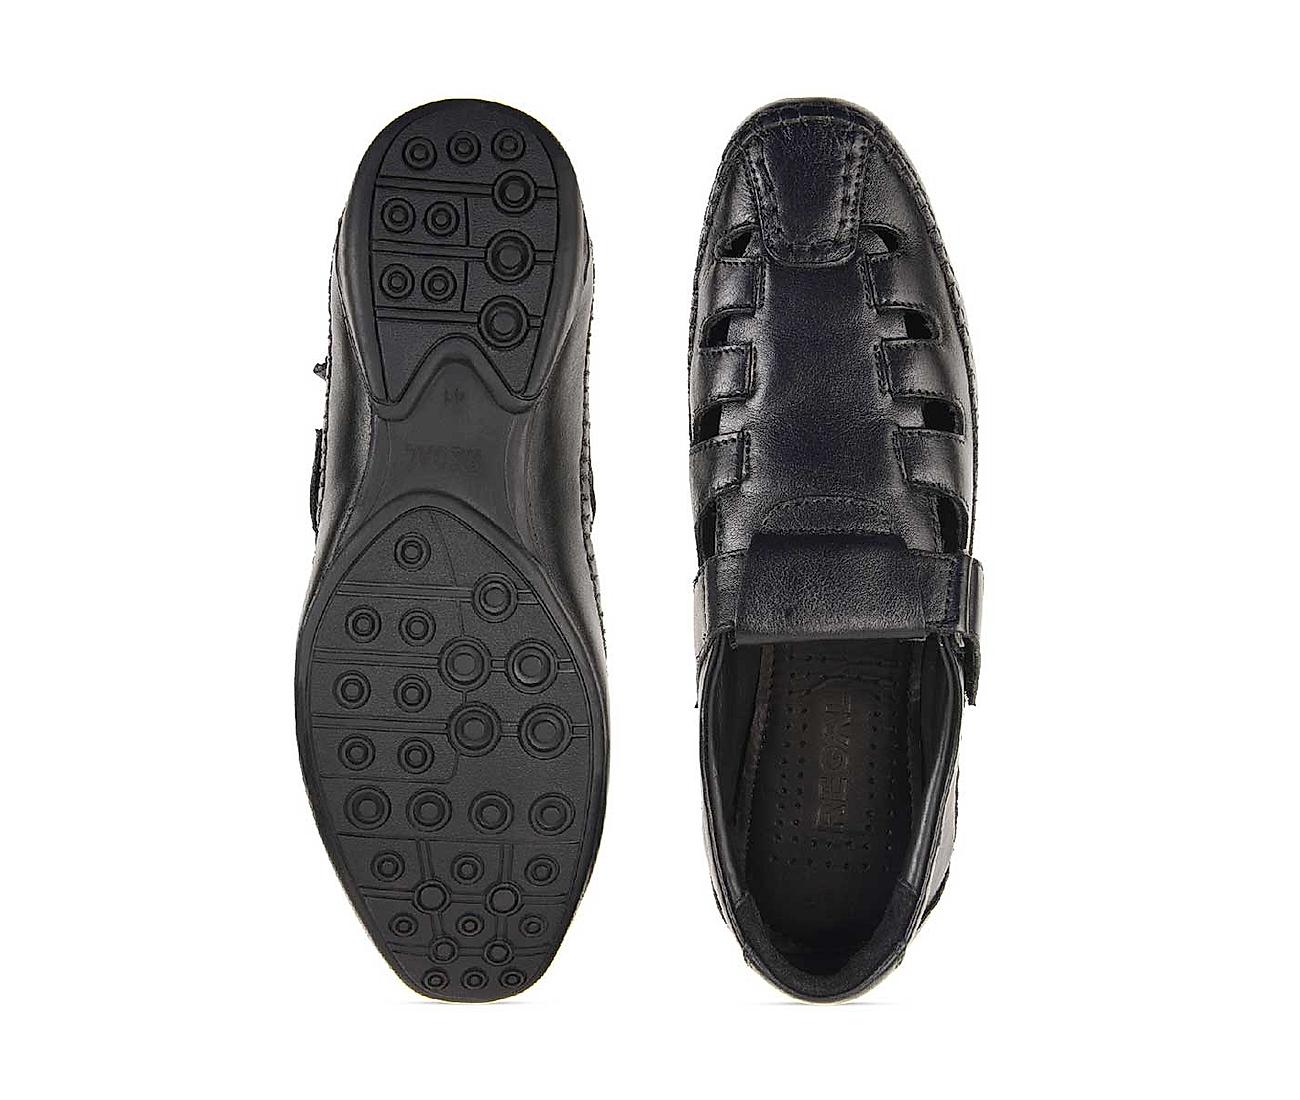 Buy Regal Black Leather Fisherman Sandals Shoes for Men Online at Regal ...